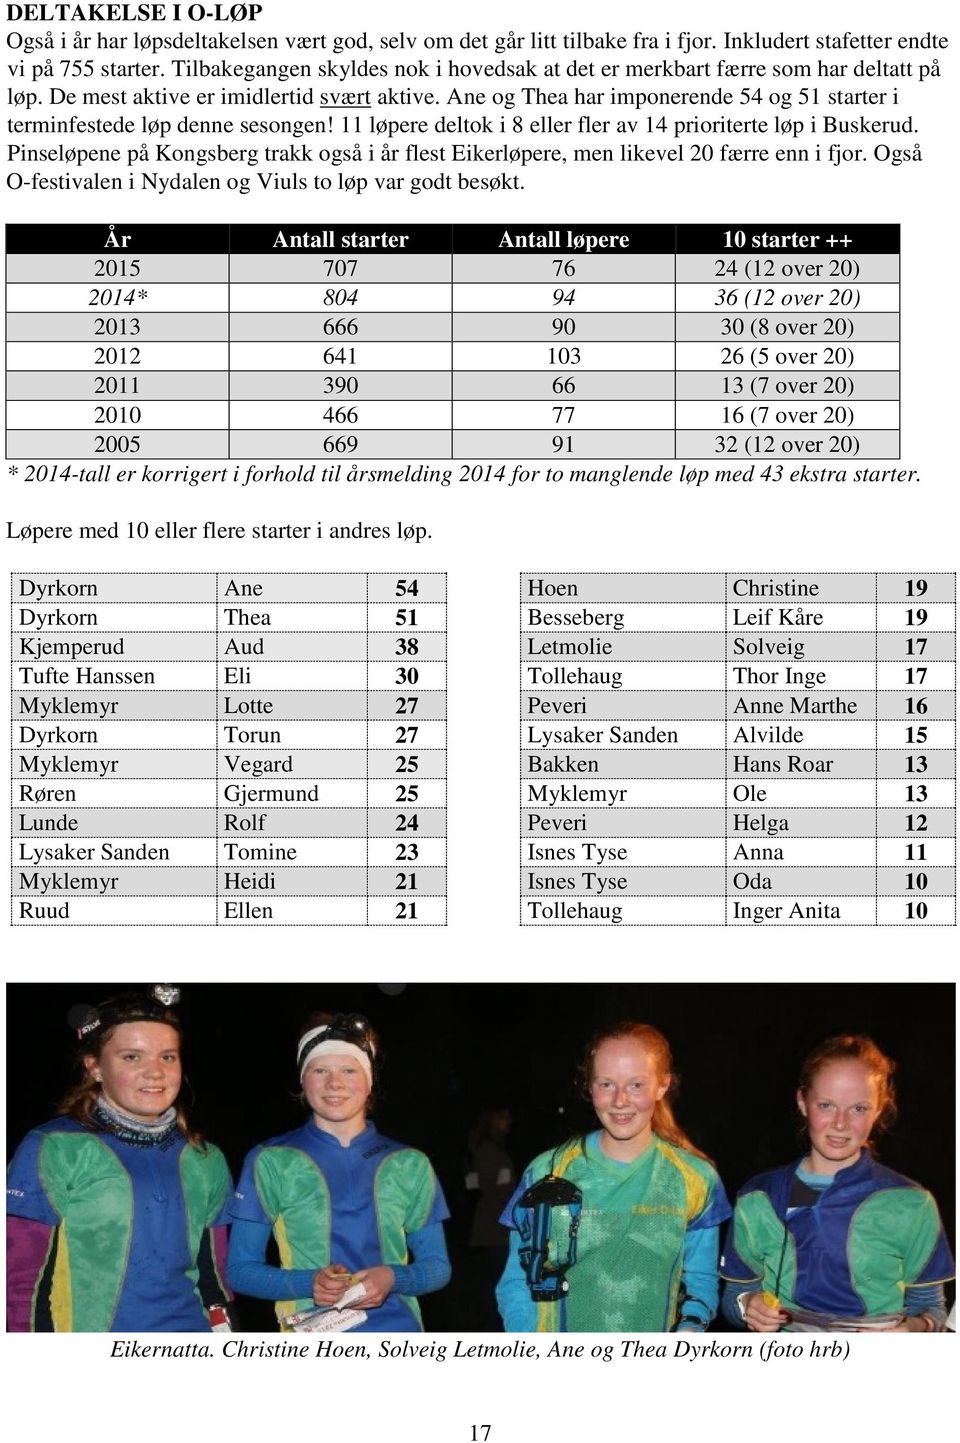 Ane og Thea har imponerende 54 og 51 starter i terminfestede løp denne sesongen! 11 løpere deltok i 8 eller fler av 14 prioriterte løp i Buskerud.